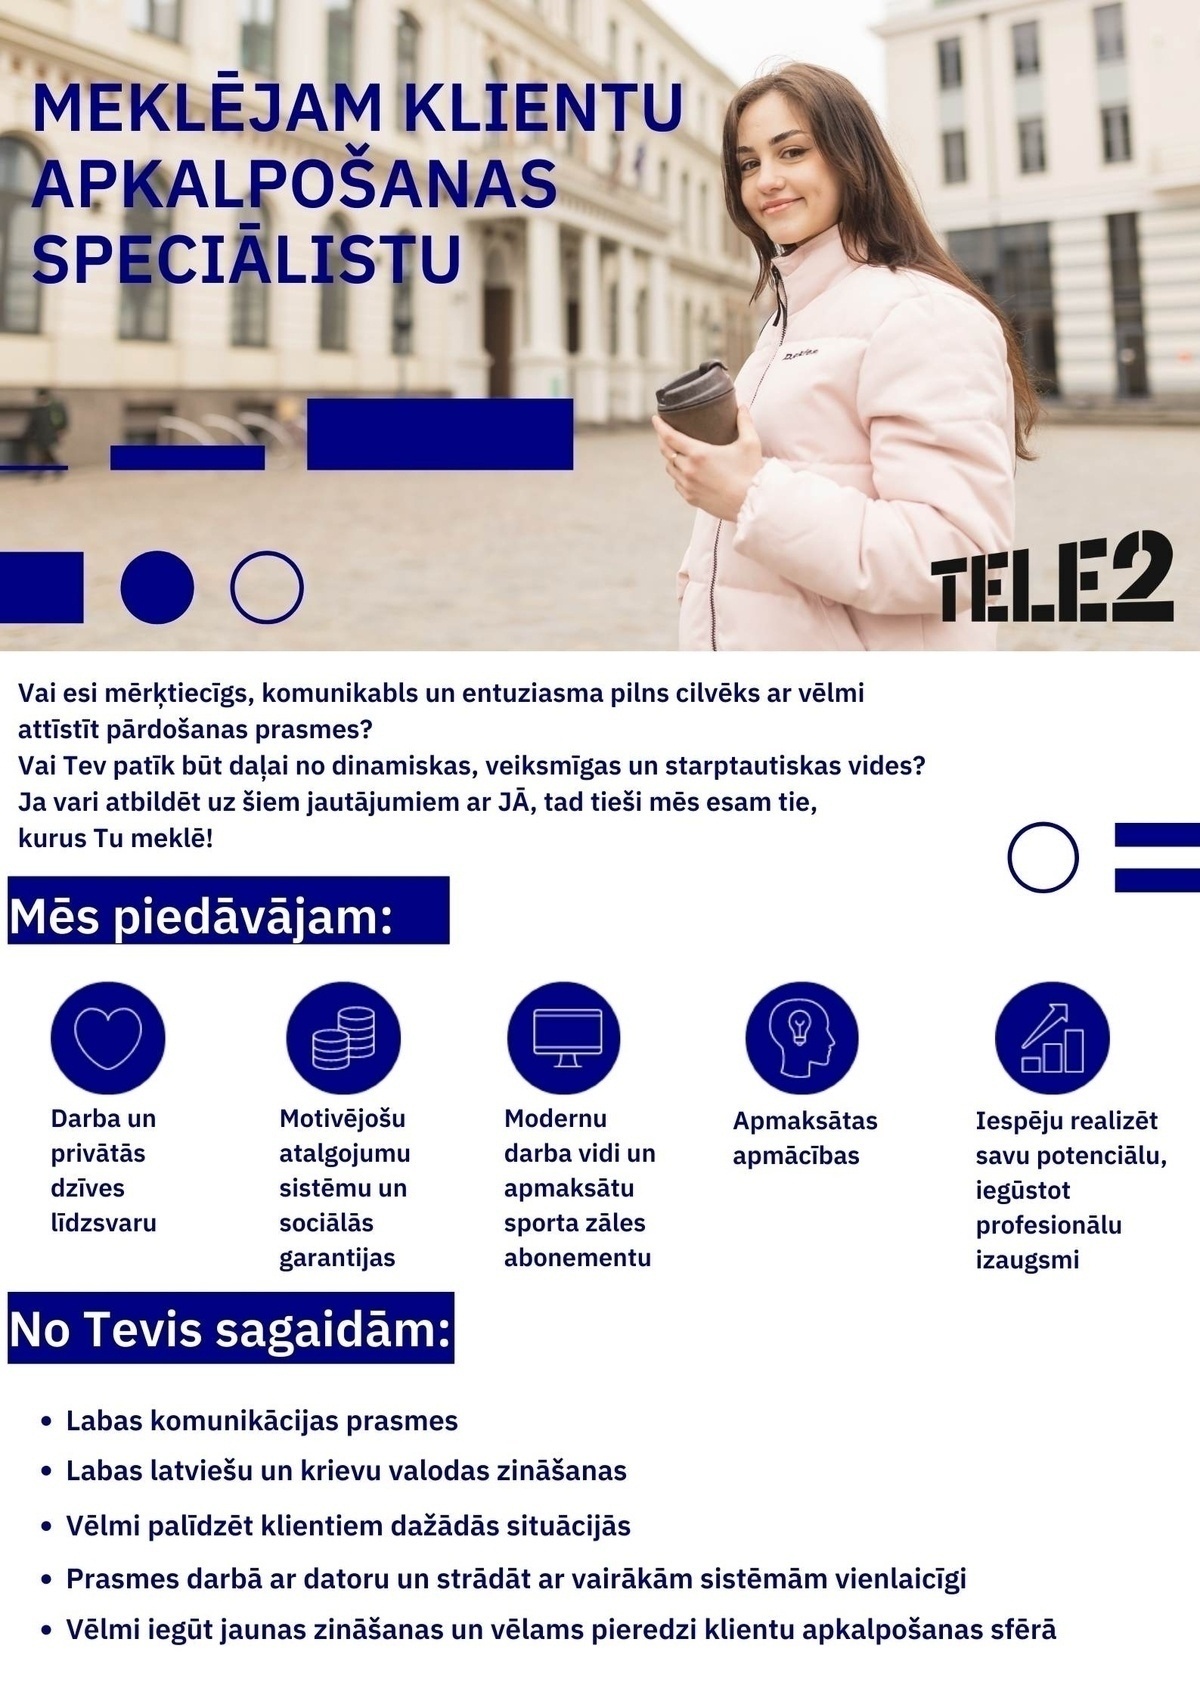 Transcom Worldwide Latvia, SIA Klientu apkalpošanas speciālists/-e darbam Rīgā